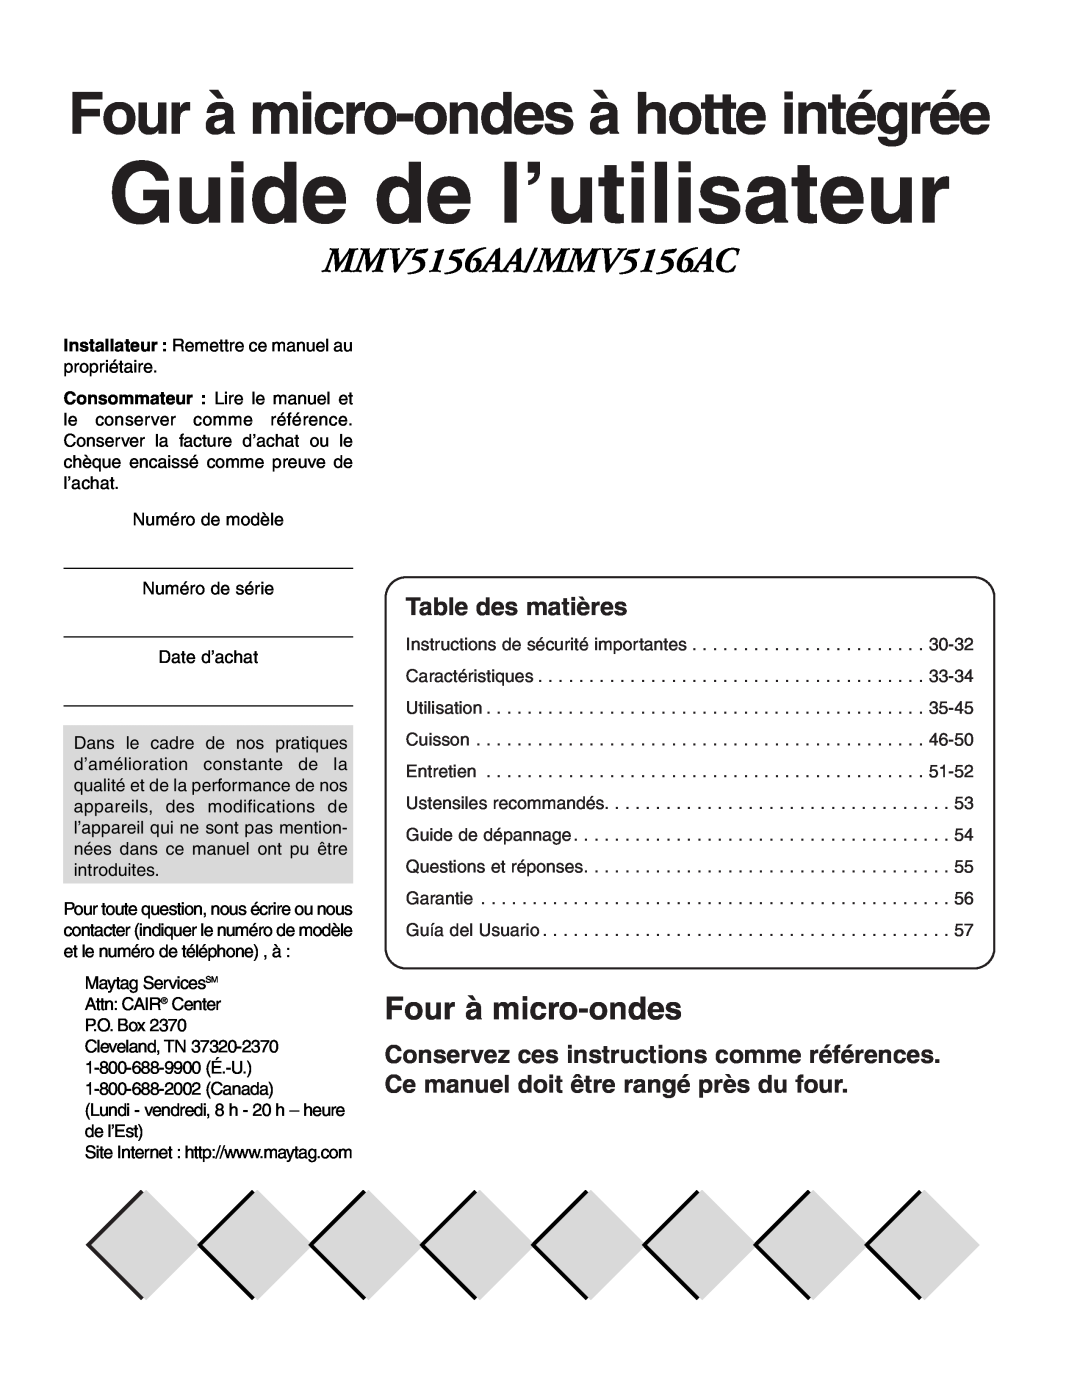 Maytag MMV51566AA/MMV5156AC owner manual Guide de l’utilisateur, Four à micro-ondesà hotte intégrée, Table des matières 